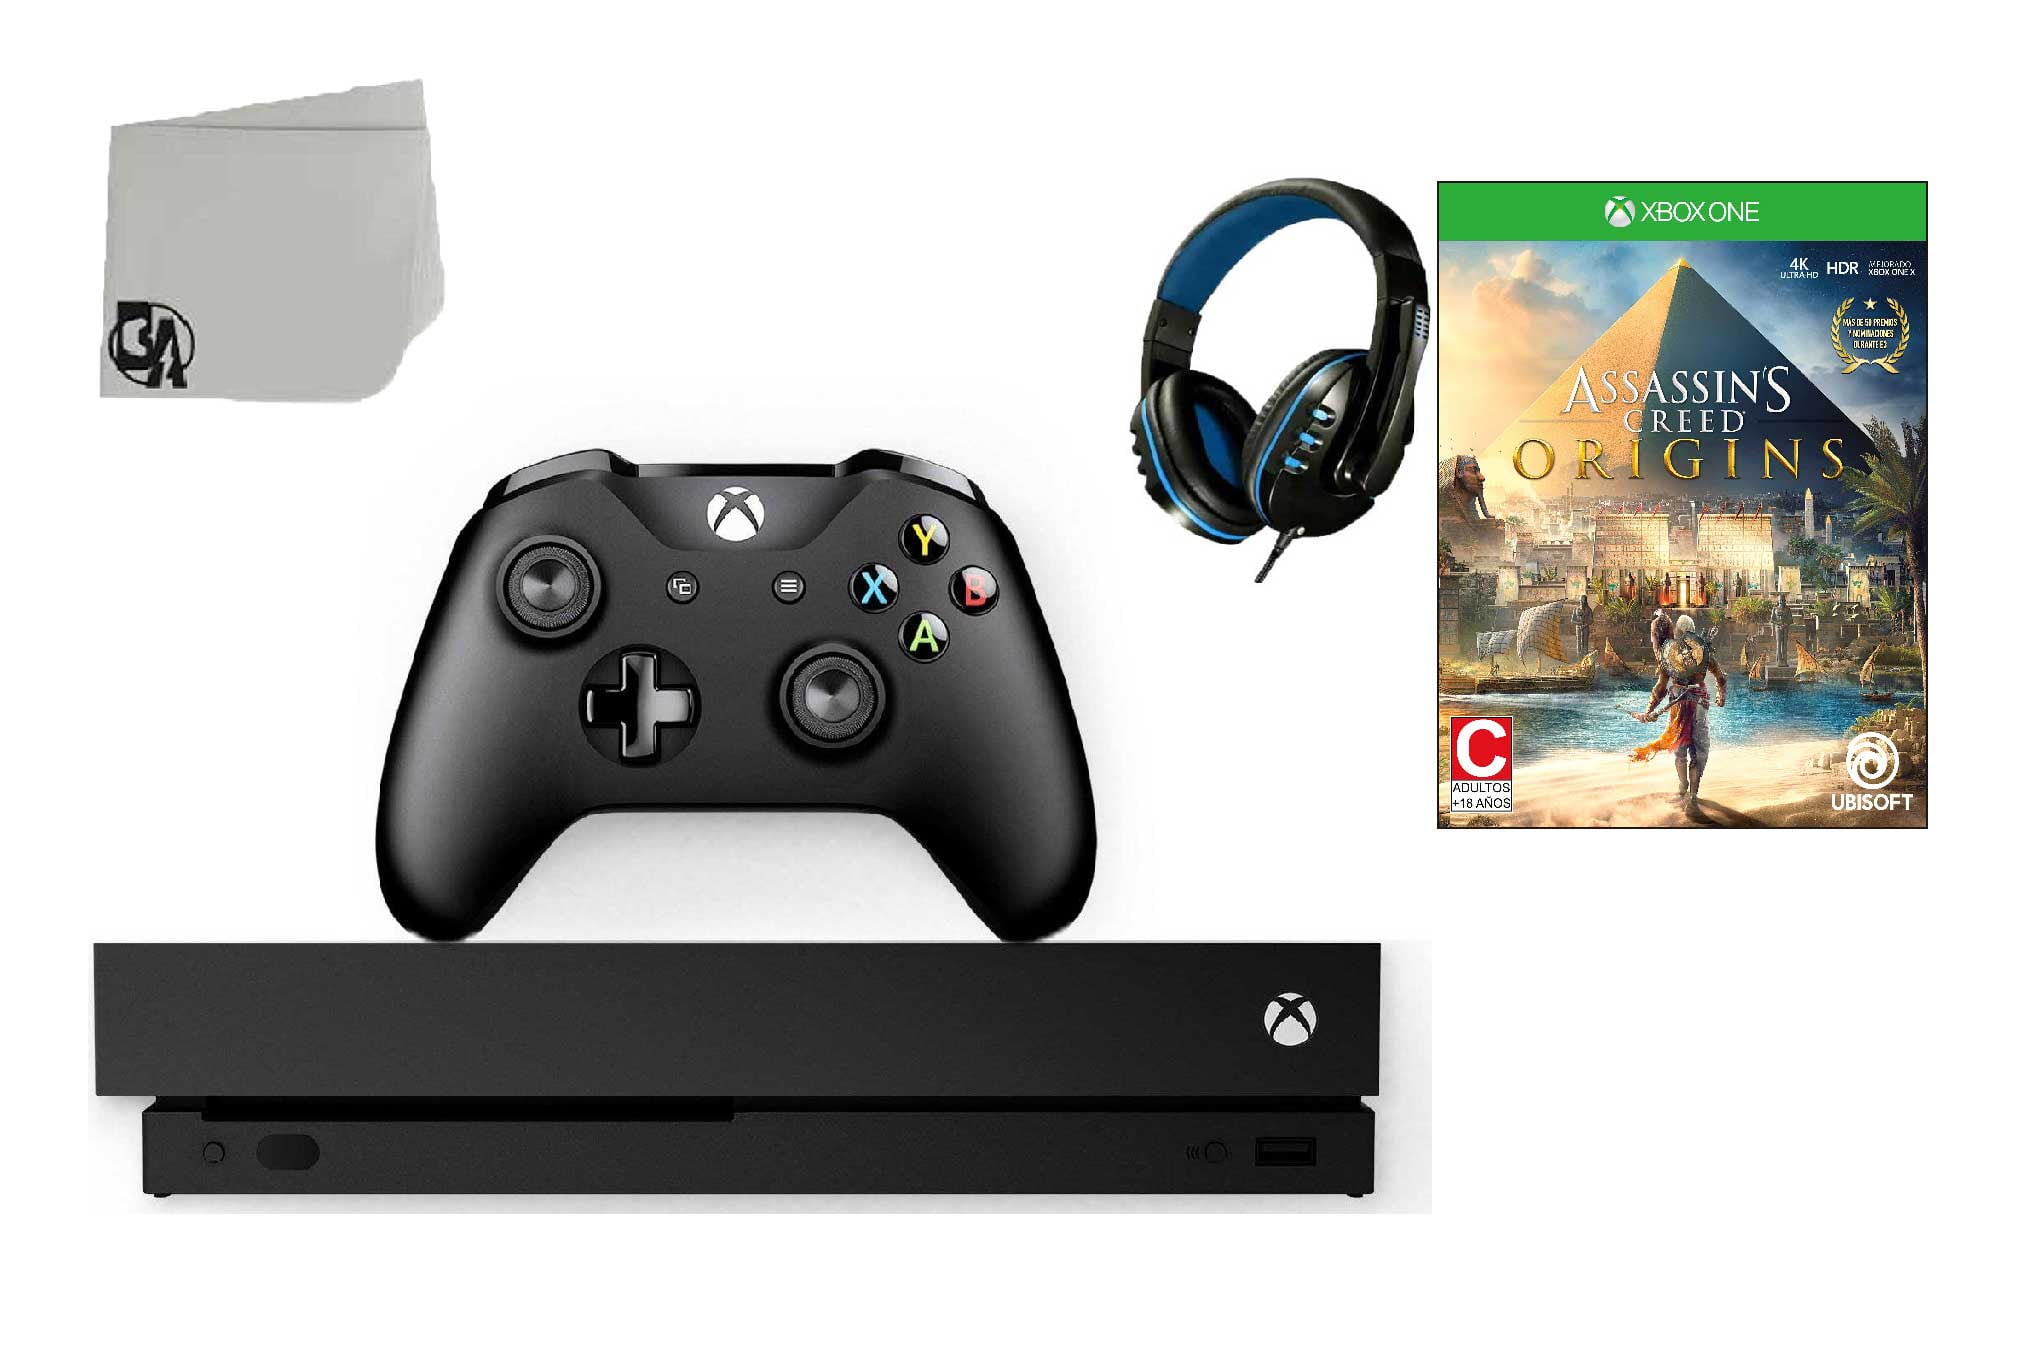 Microsoft Xbox One X 1tb Usado - Desconto no Preço